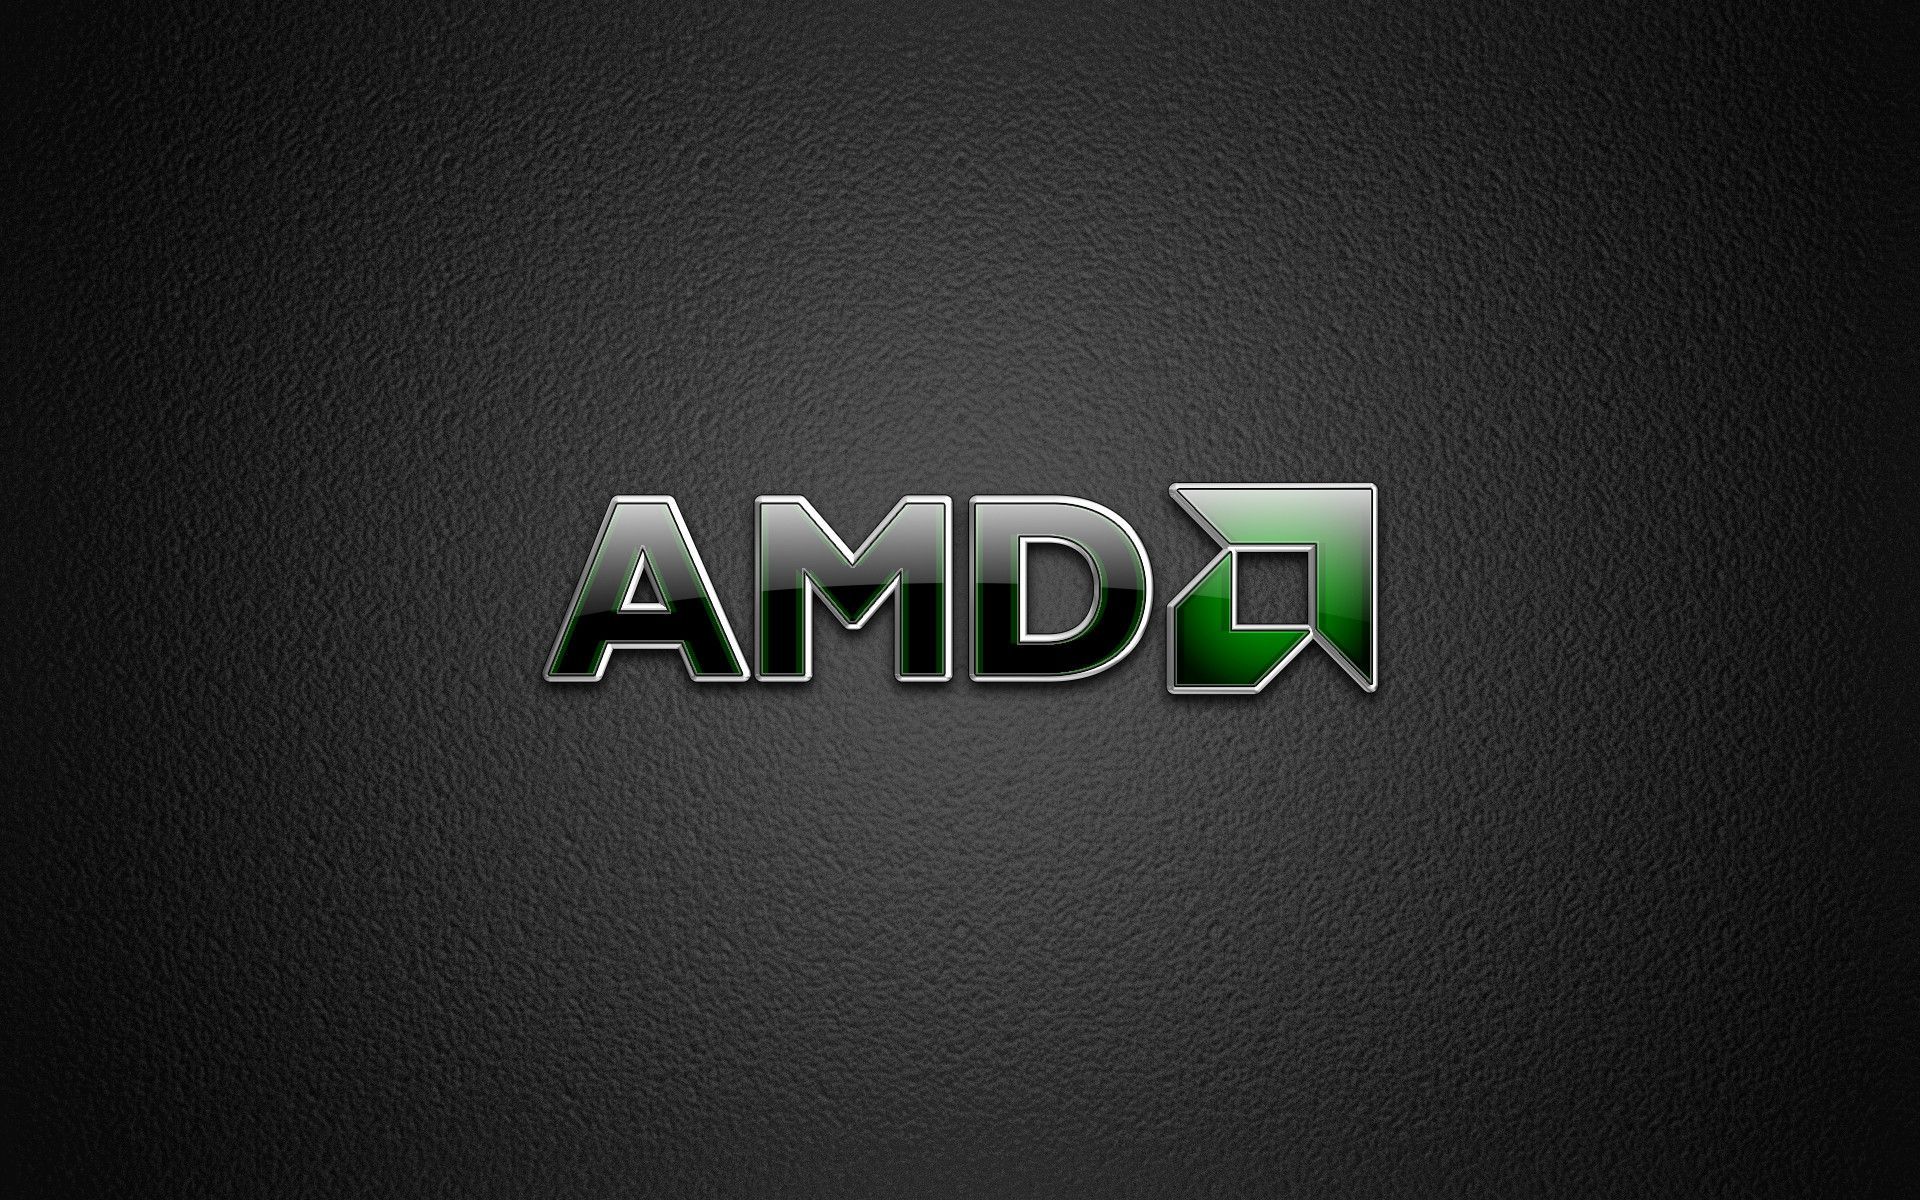 Amd logo wallpaper